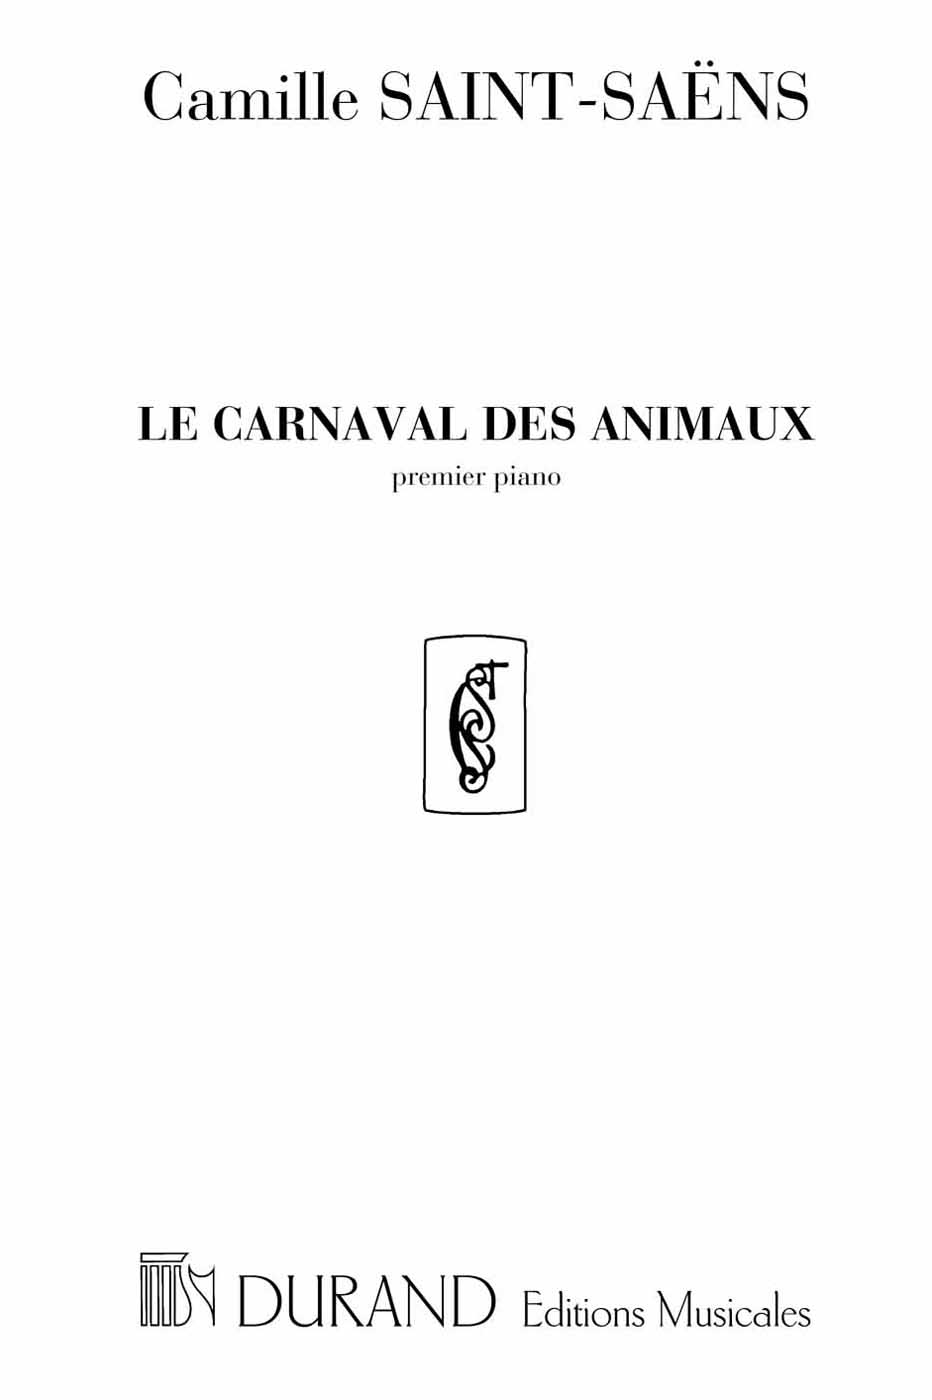 Le Carnaval des animaux, premier piano